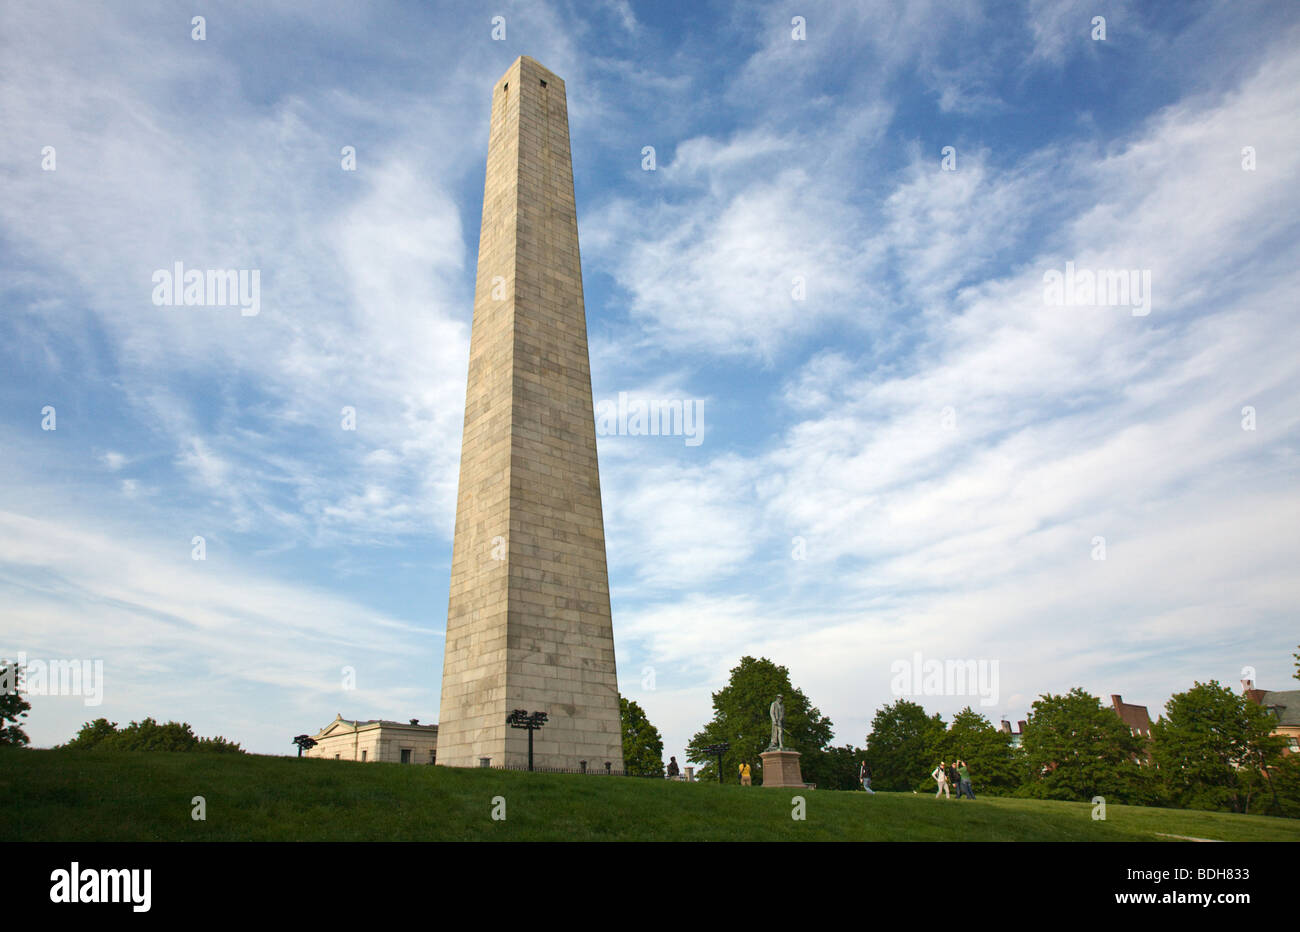 El obelisco de granito en el Bunker hill Monument situada sobre las razas Hill conmemora a los héroes de la Guerra Revolucionaria - Boston Foto de stock